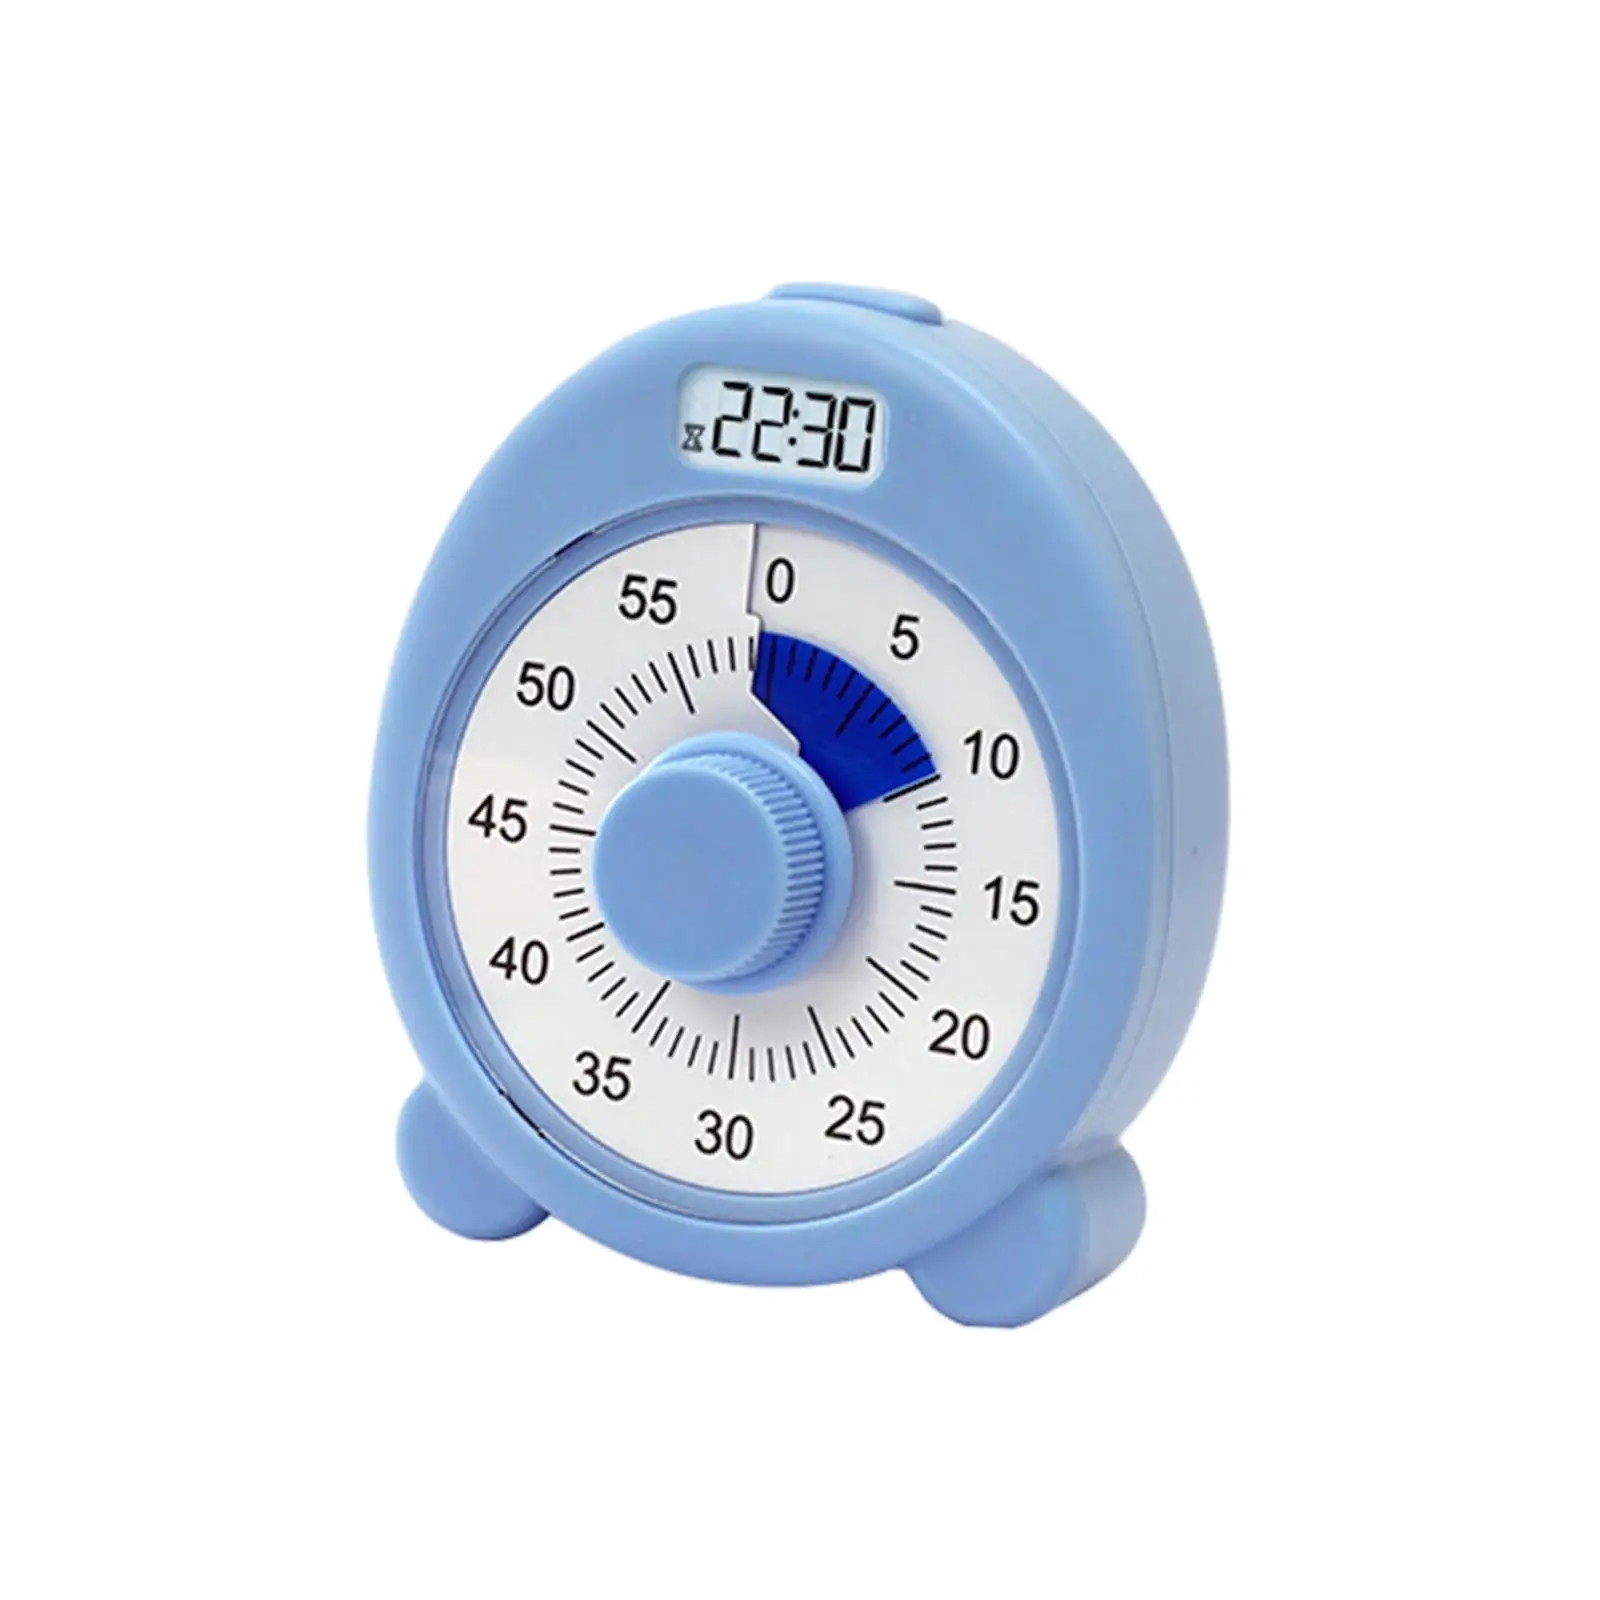 Dual Screen Visual Timer Analog Baking Alarm Clock for Meeting Teaching Kids